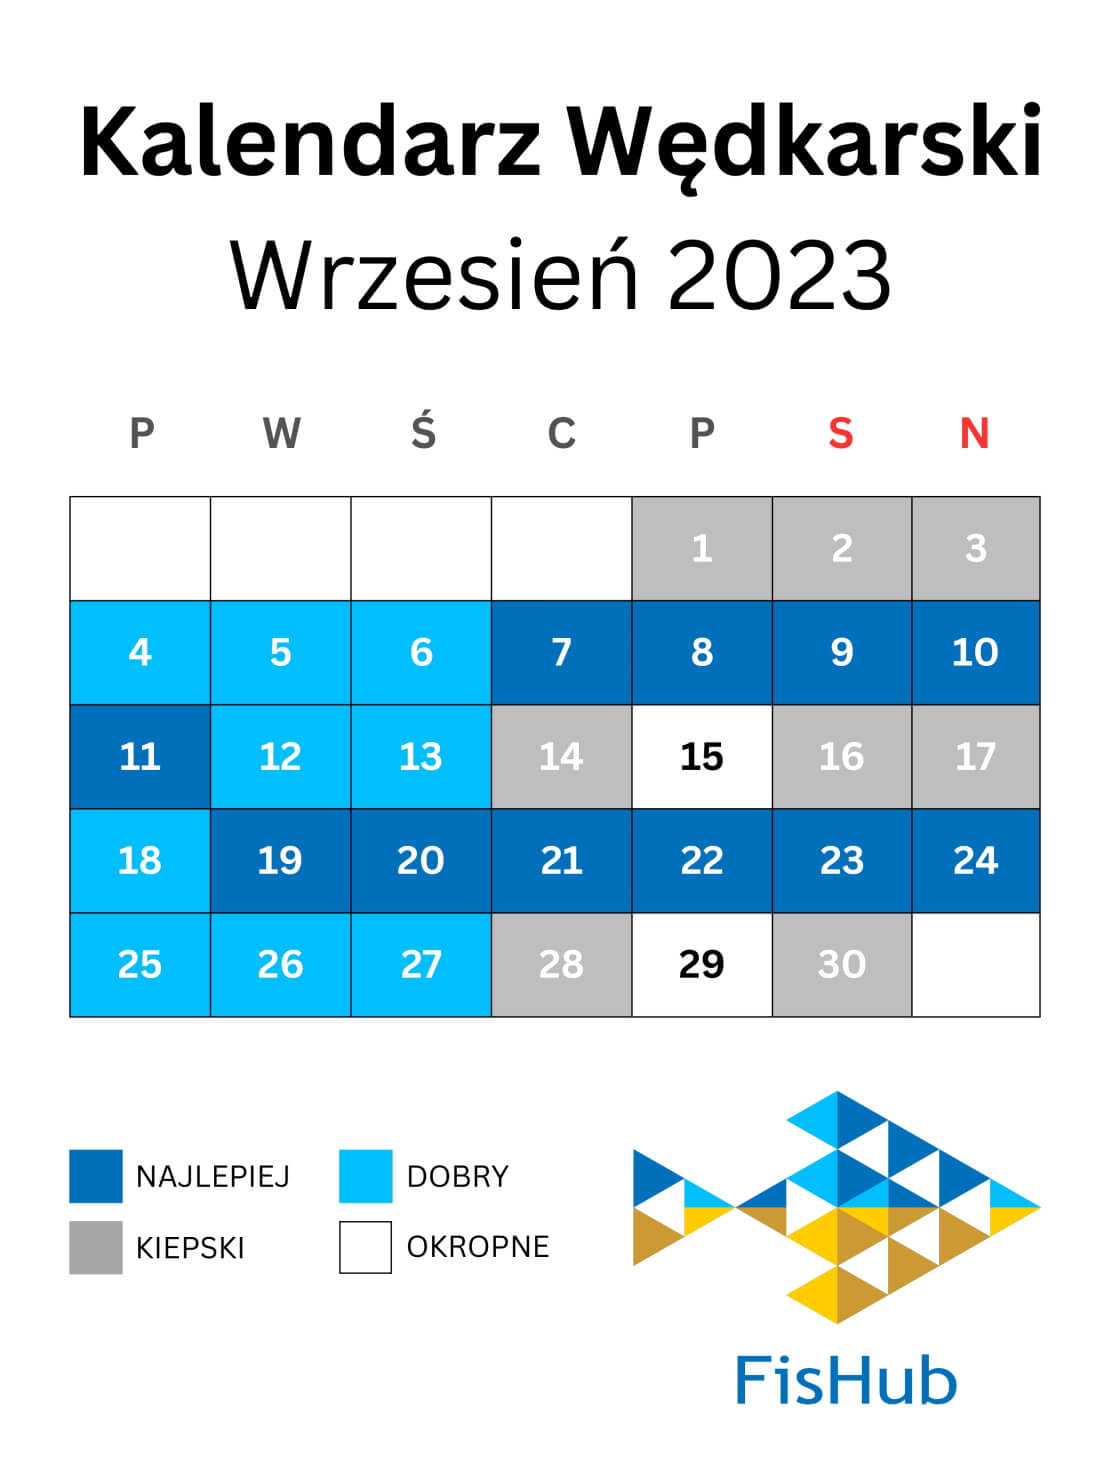 Kalendarz brań na Wrzesień 2023 r.